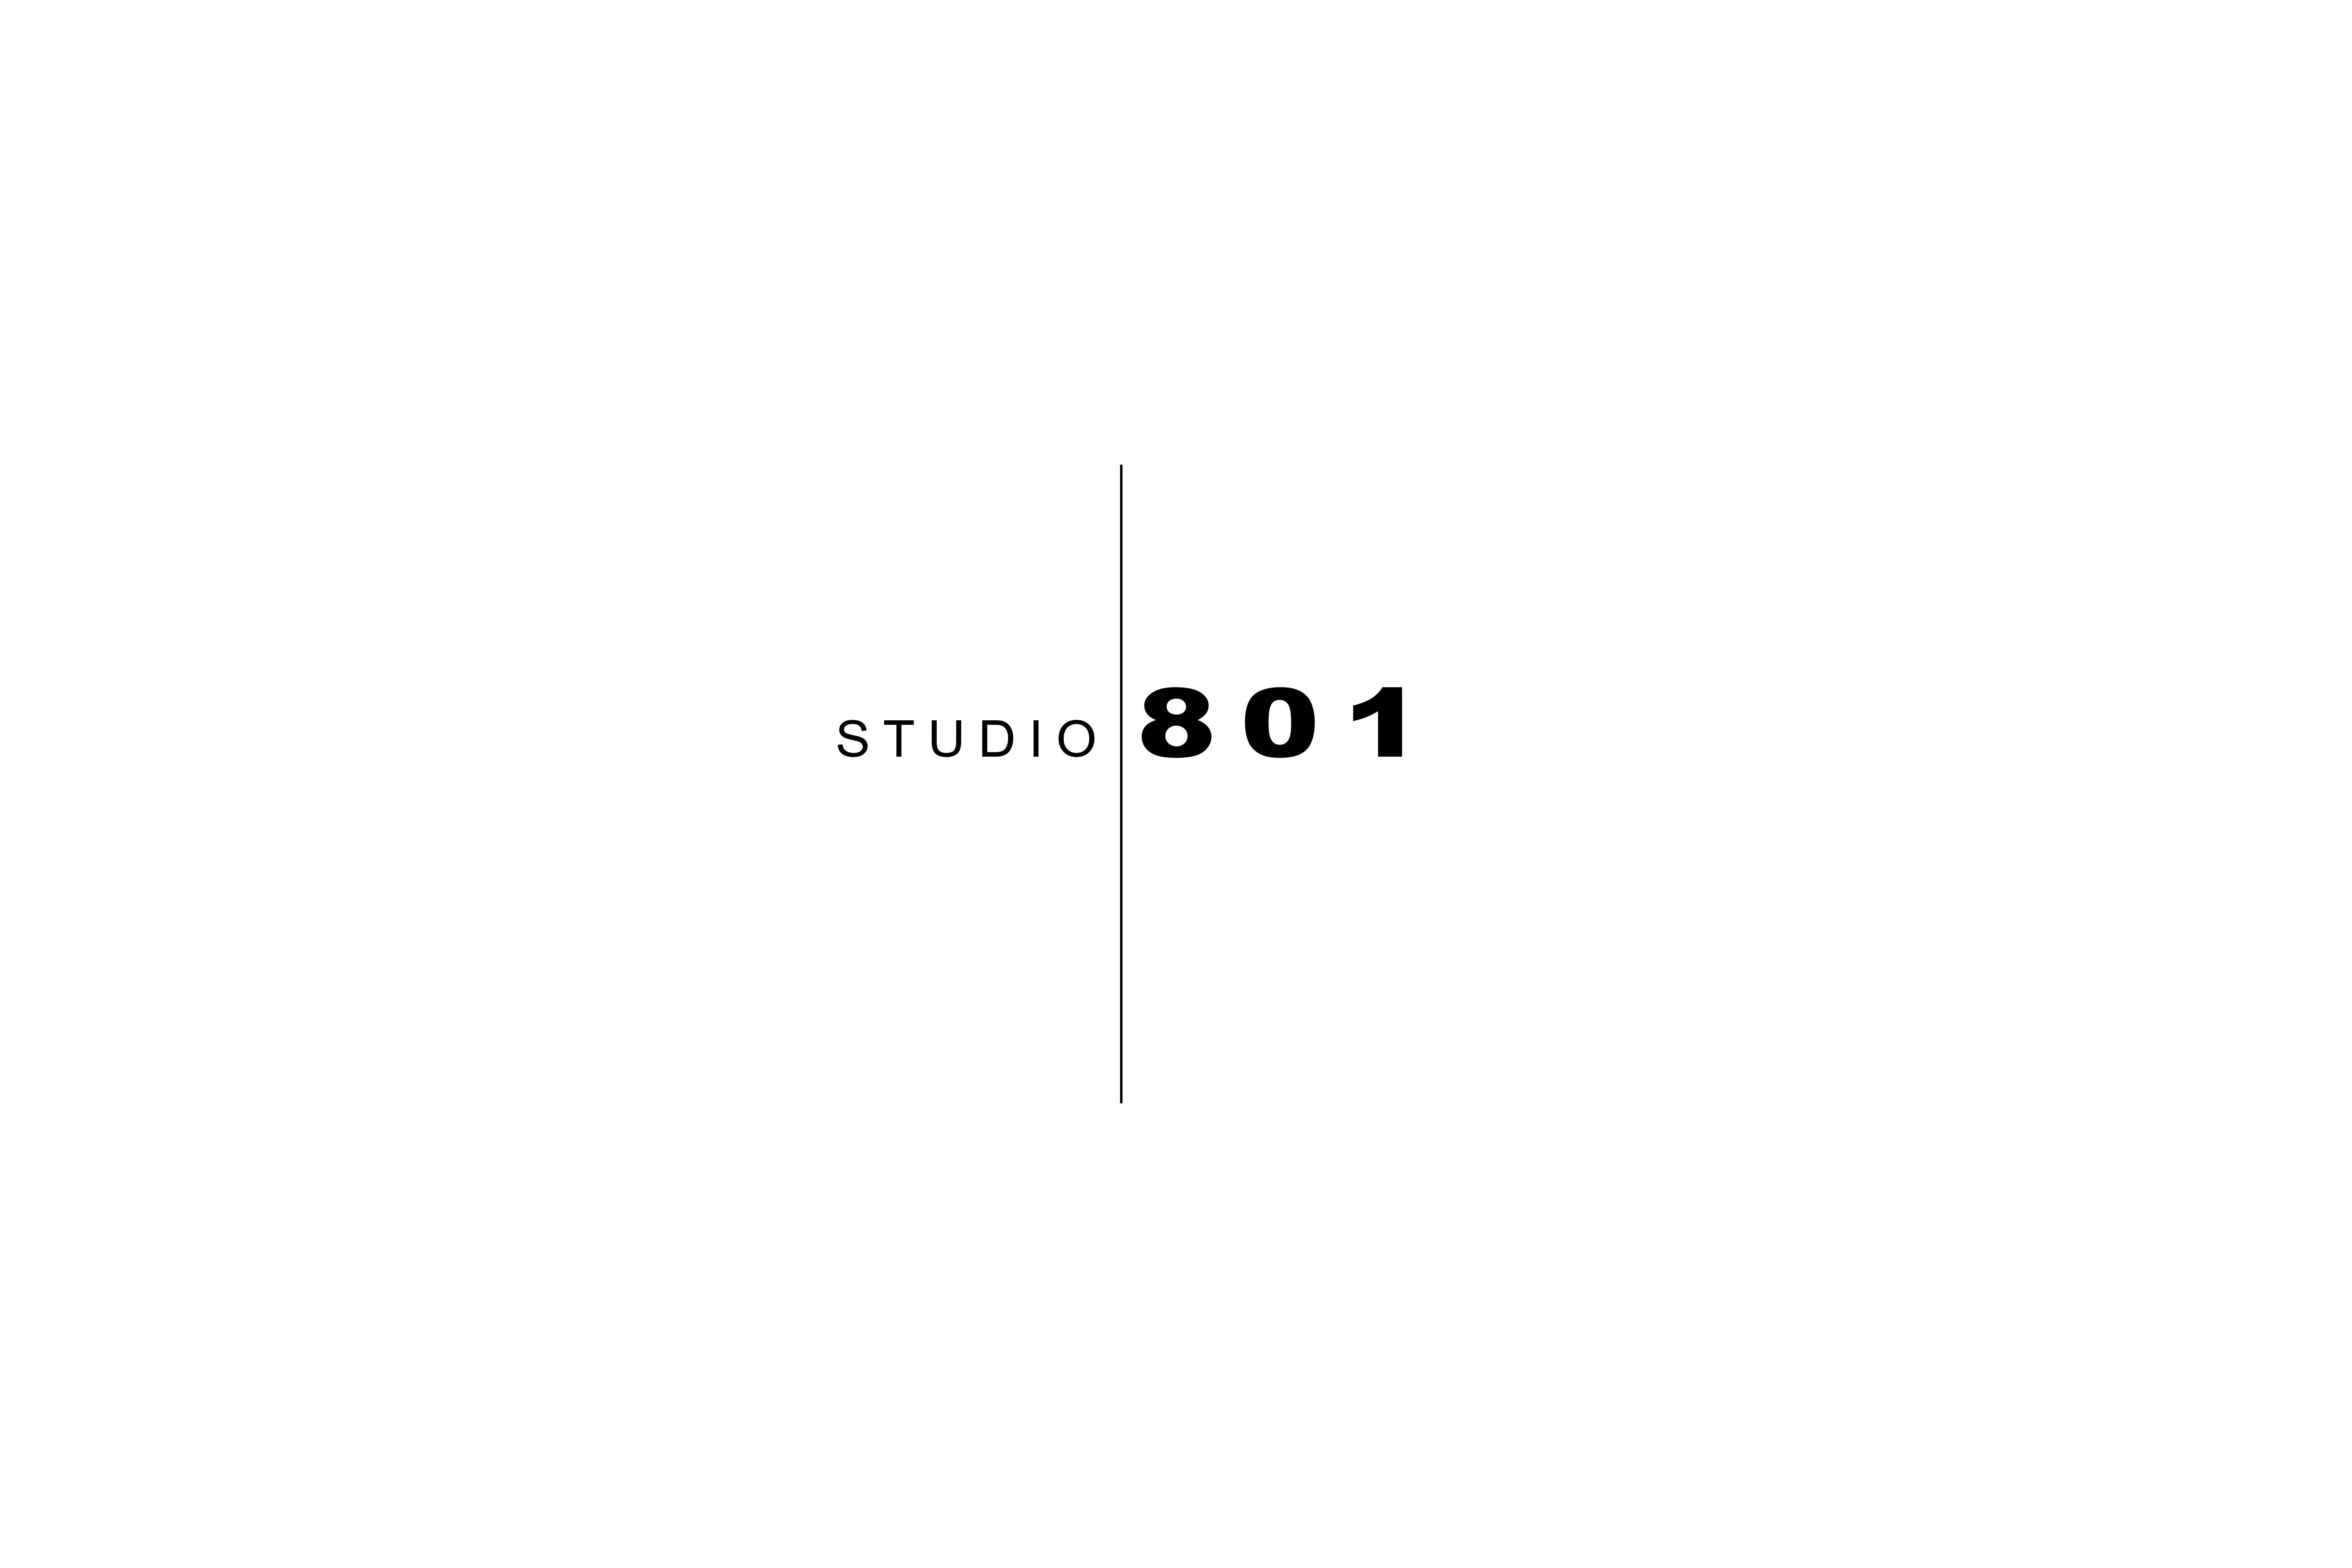 Studio 801